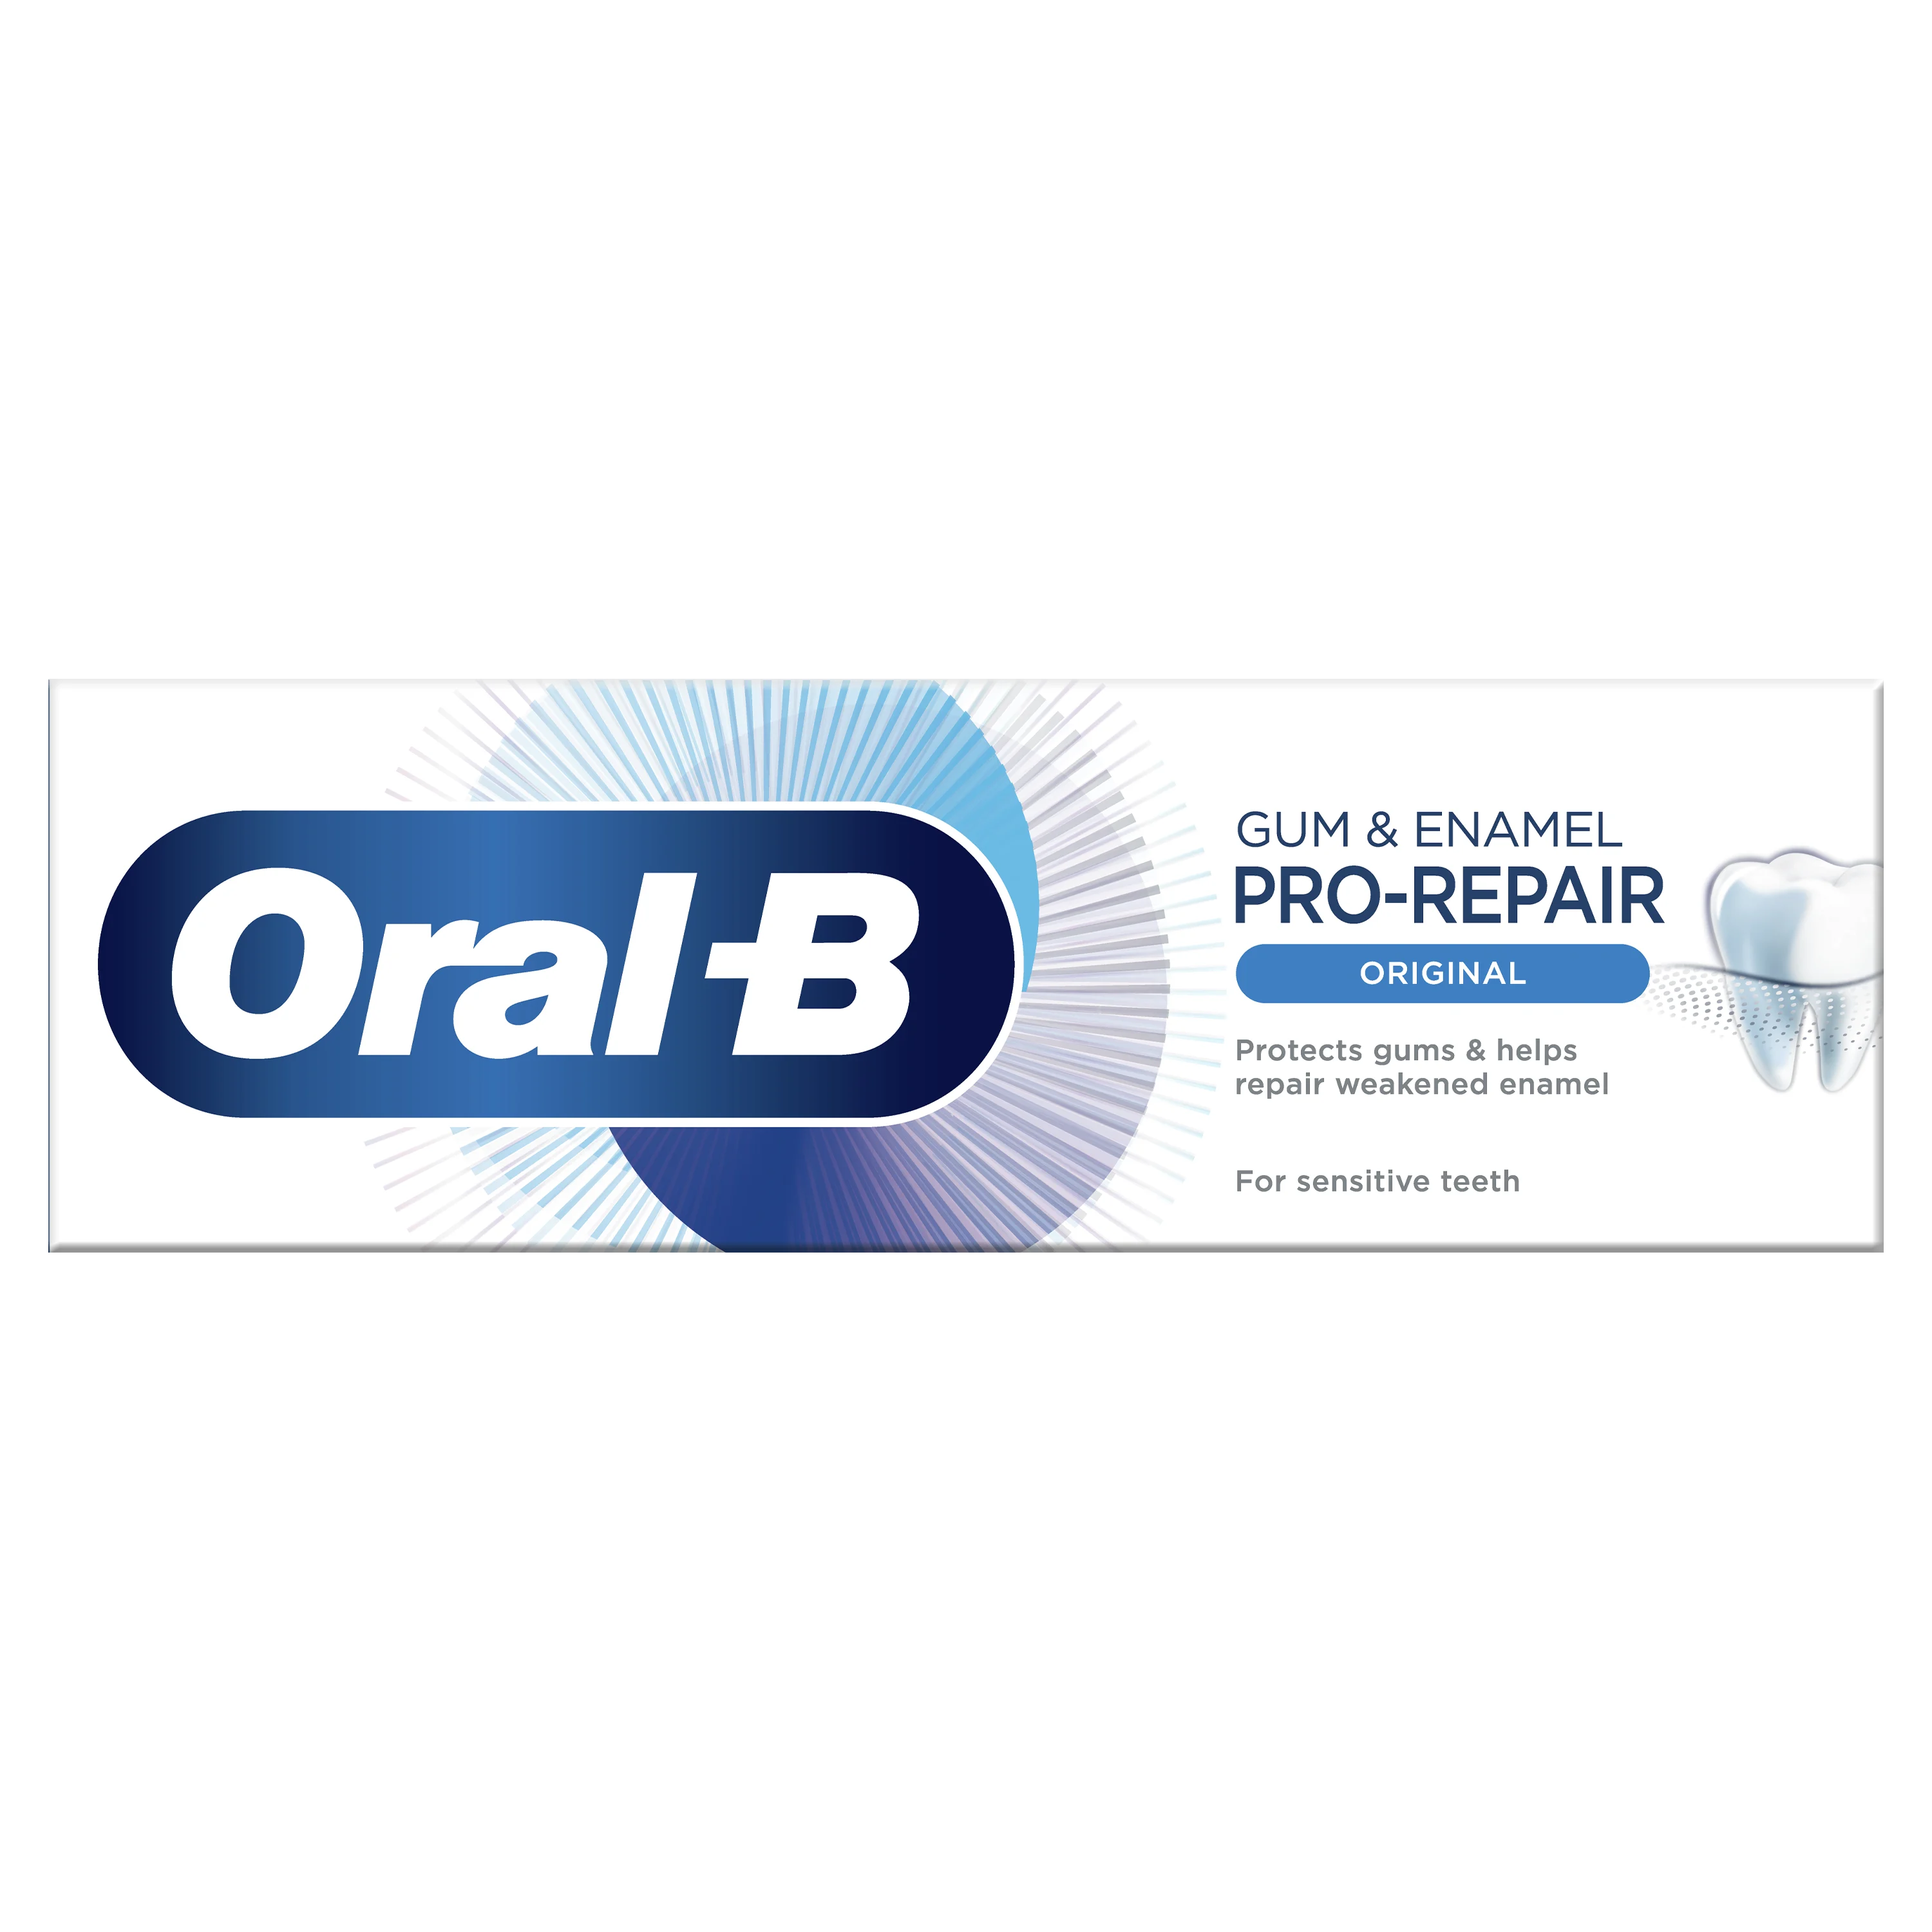 Gum Enamel Pro-Repair Tandpasta | Oral-B